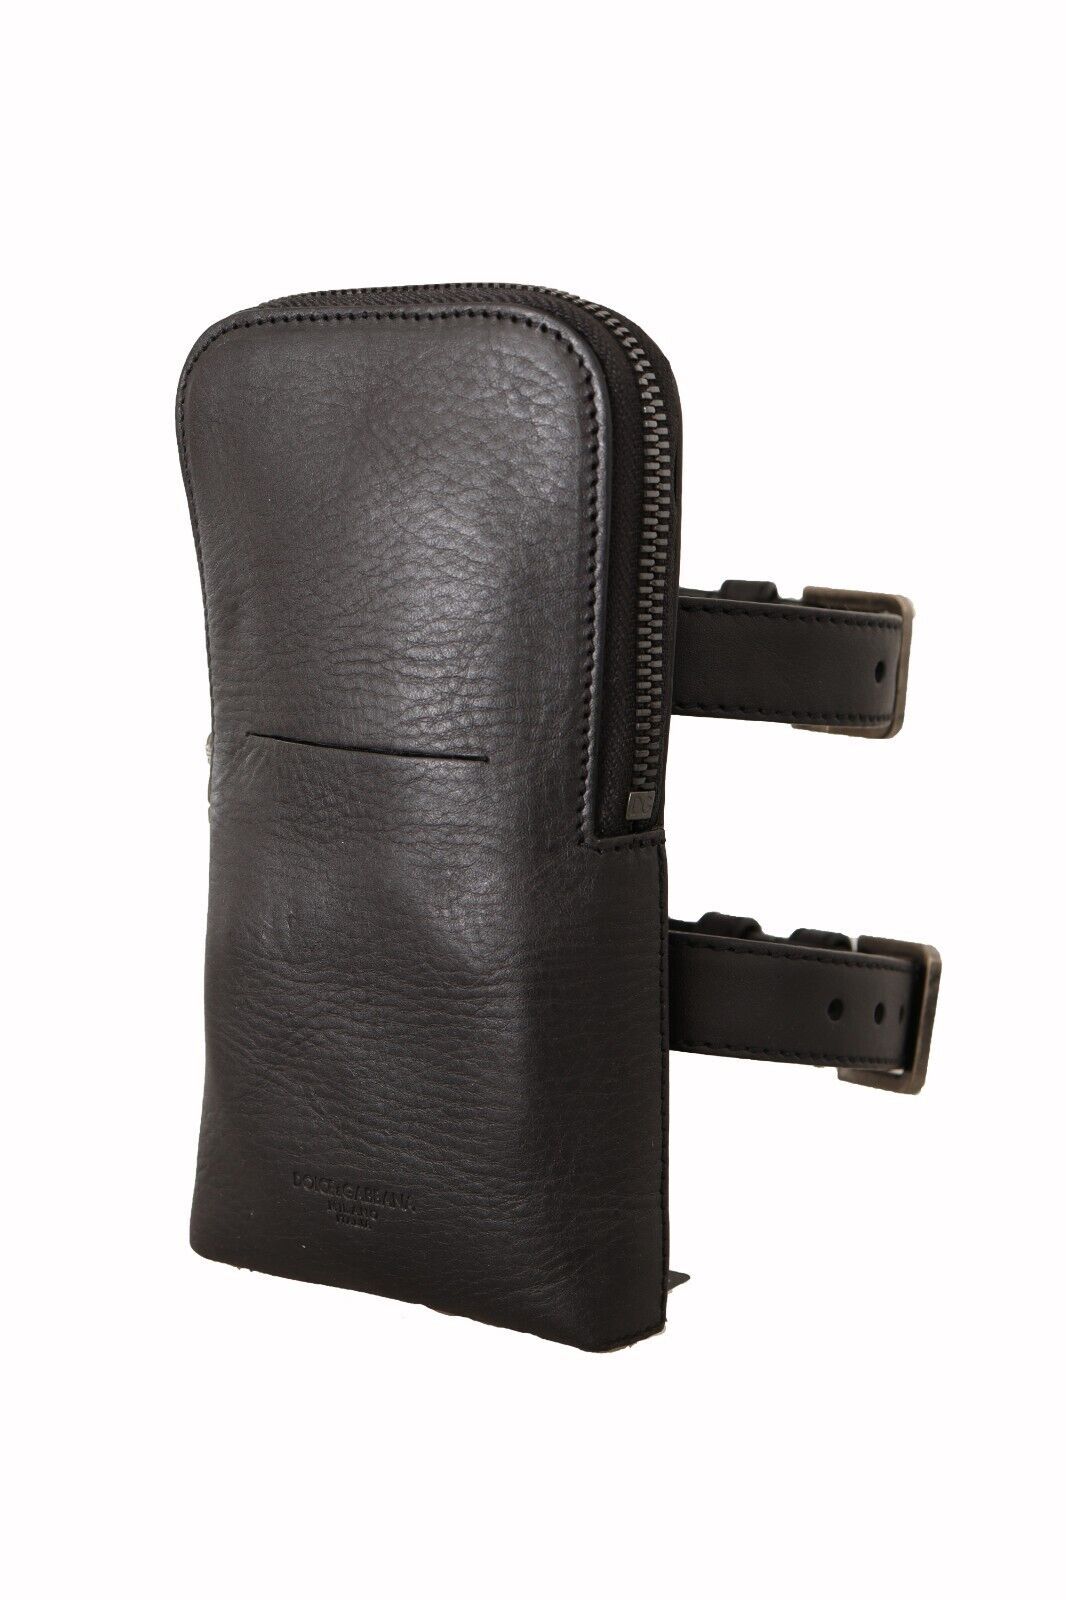 Dolce & Gabbana Black Leder Geldbeutel Doppelgürtel -Multi -Kit -Brieftasche